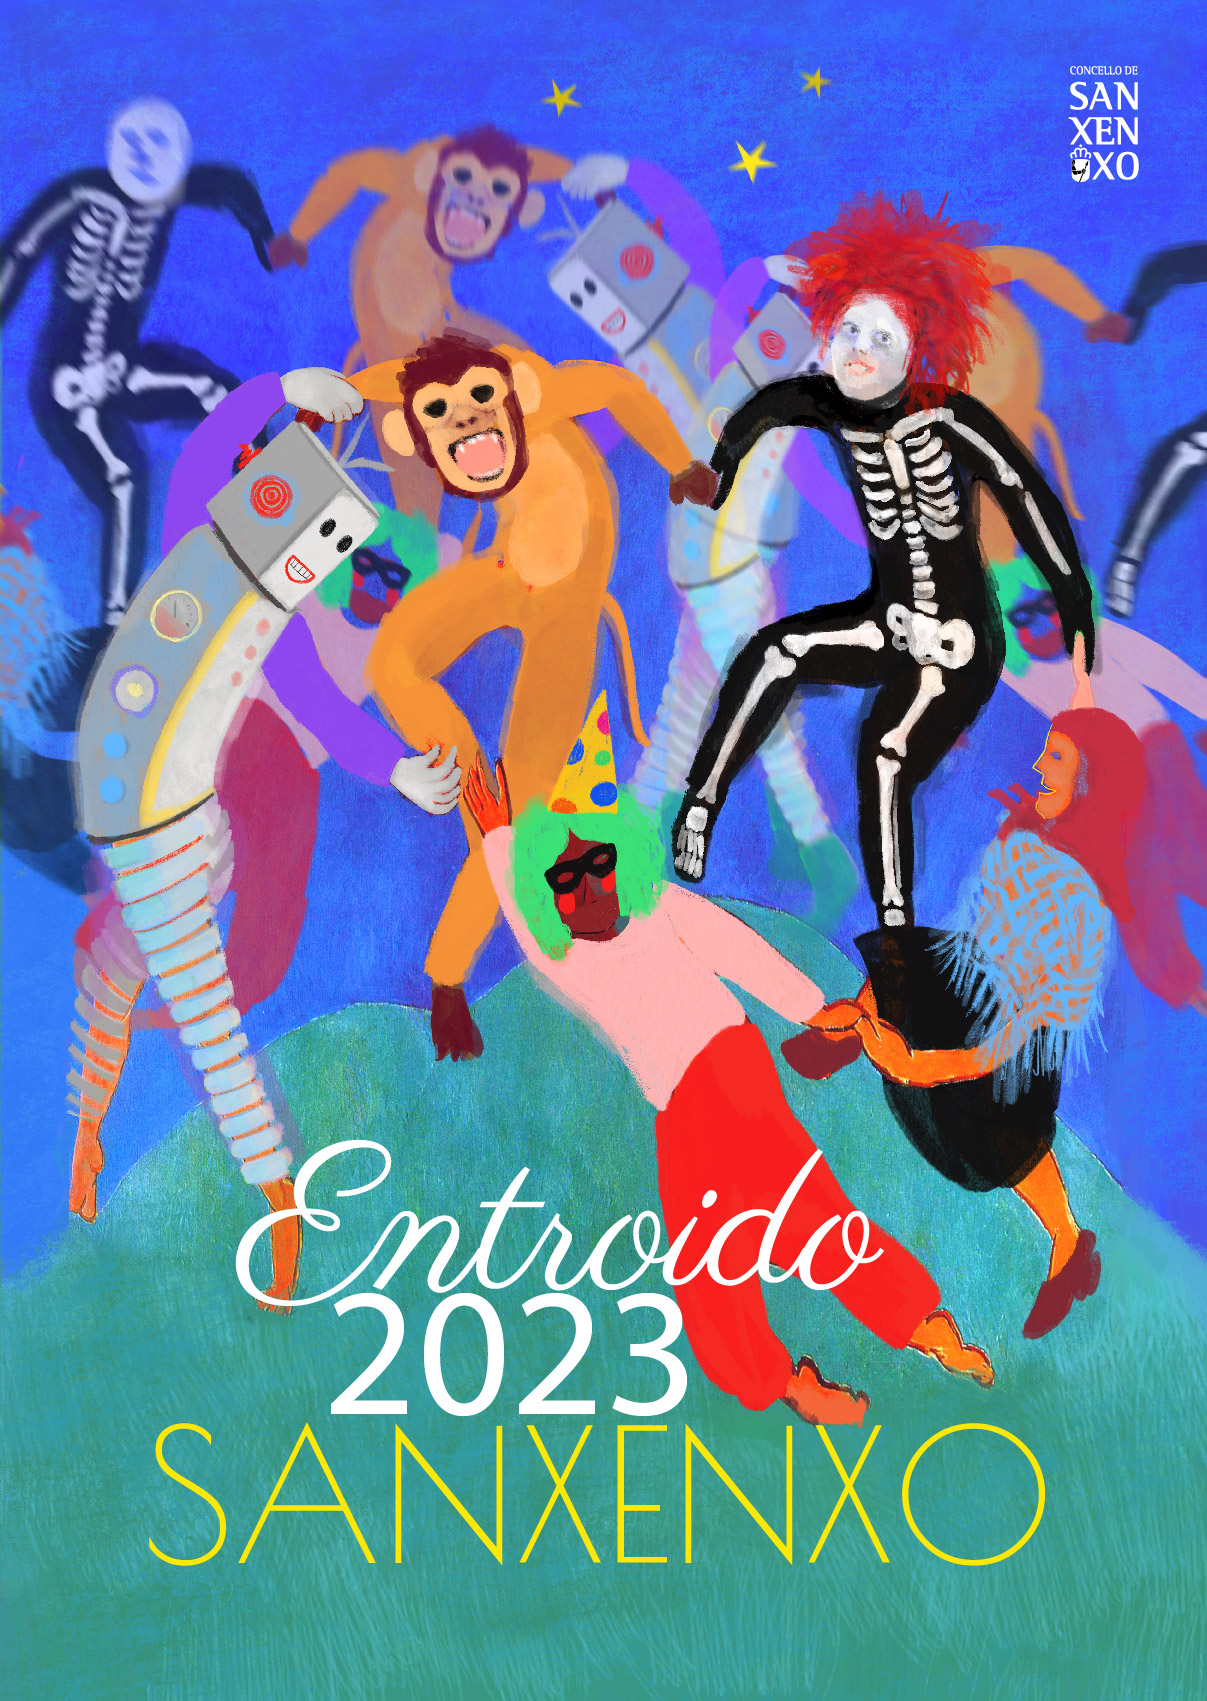 ENTROIDO 2023